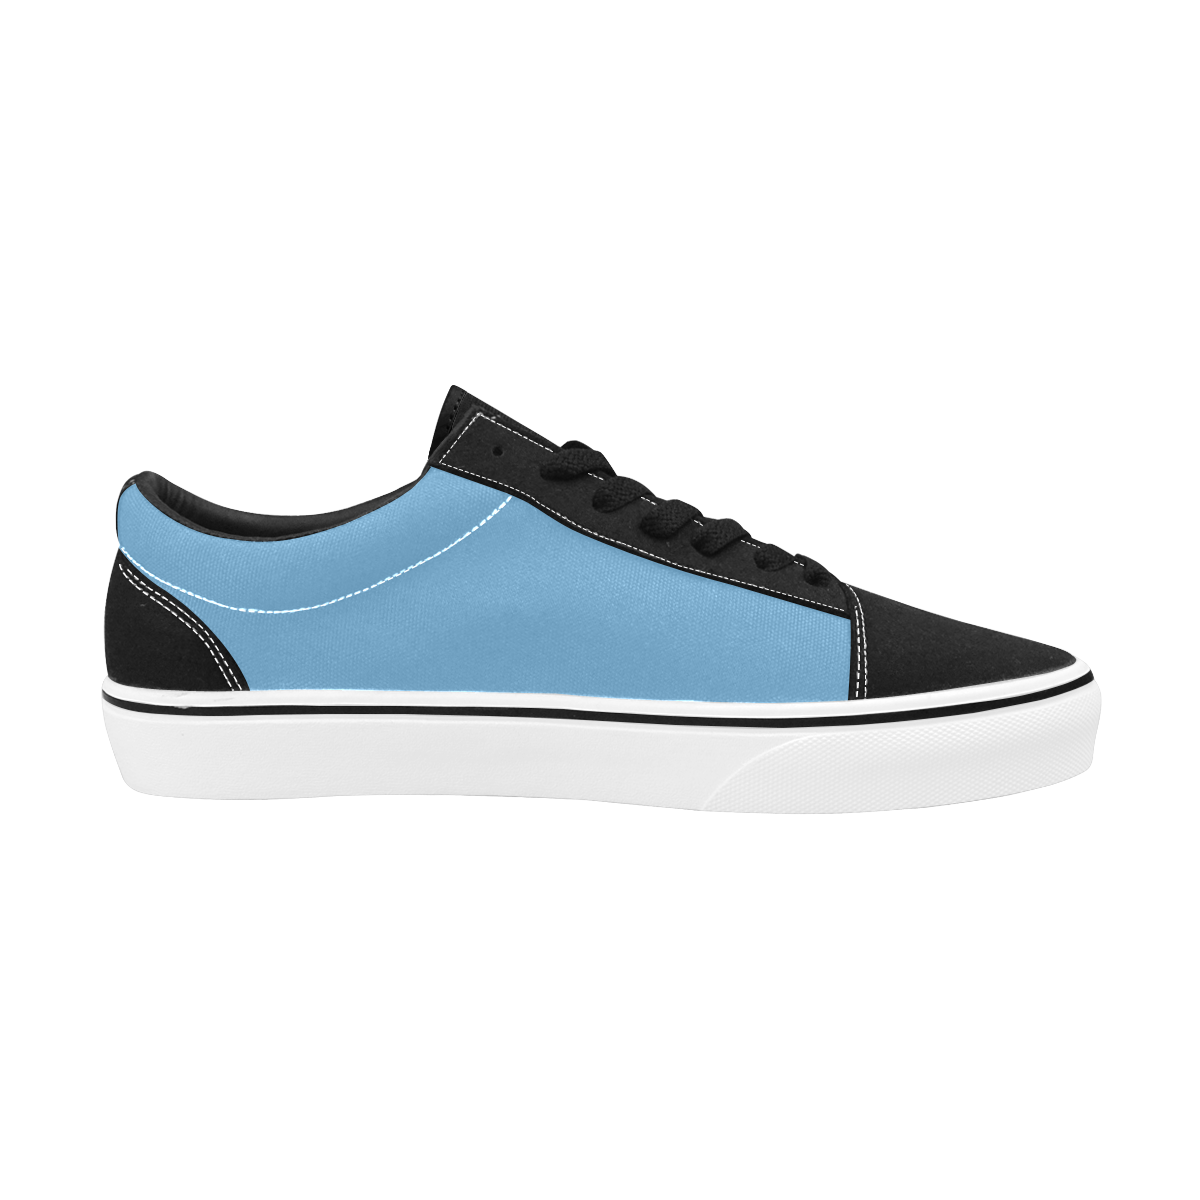 FAT BOY - Blue Boy Hybrid Skateboard Shoes Men's Low Top Skateboarding Shoes (Model E001-2)